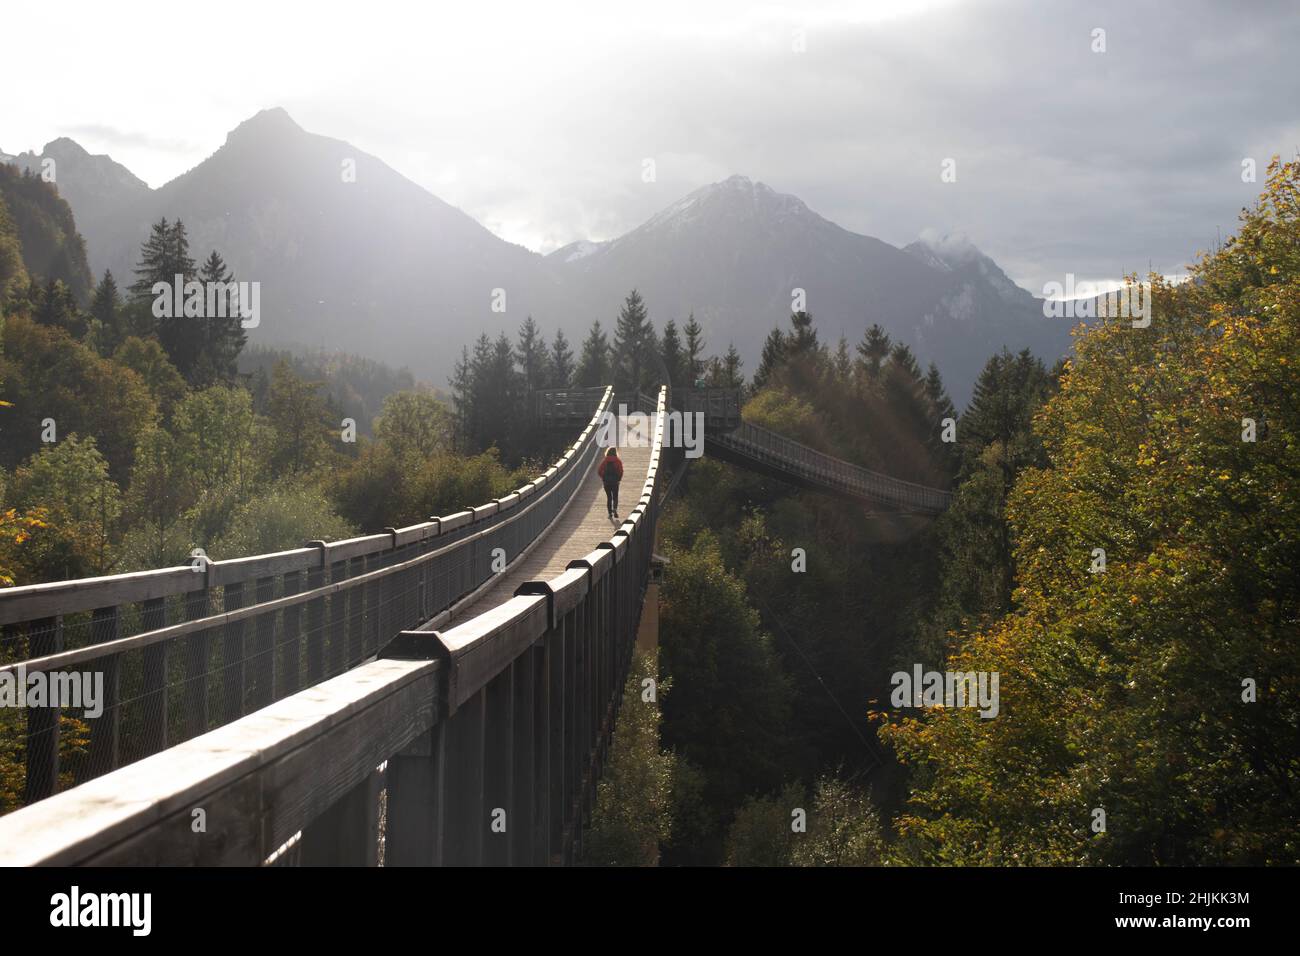 Der Baumkronenweg ist ein Pfad über Hängebrücken im Walderlebniszentrum Füssen-Ziegelwies. Er ist 480 Meter lang und in einer Höhe von 21 Metern. Foto Stock